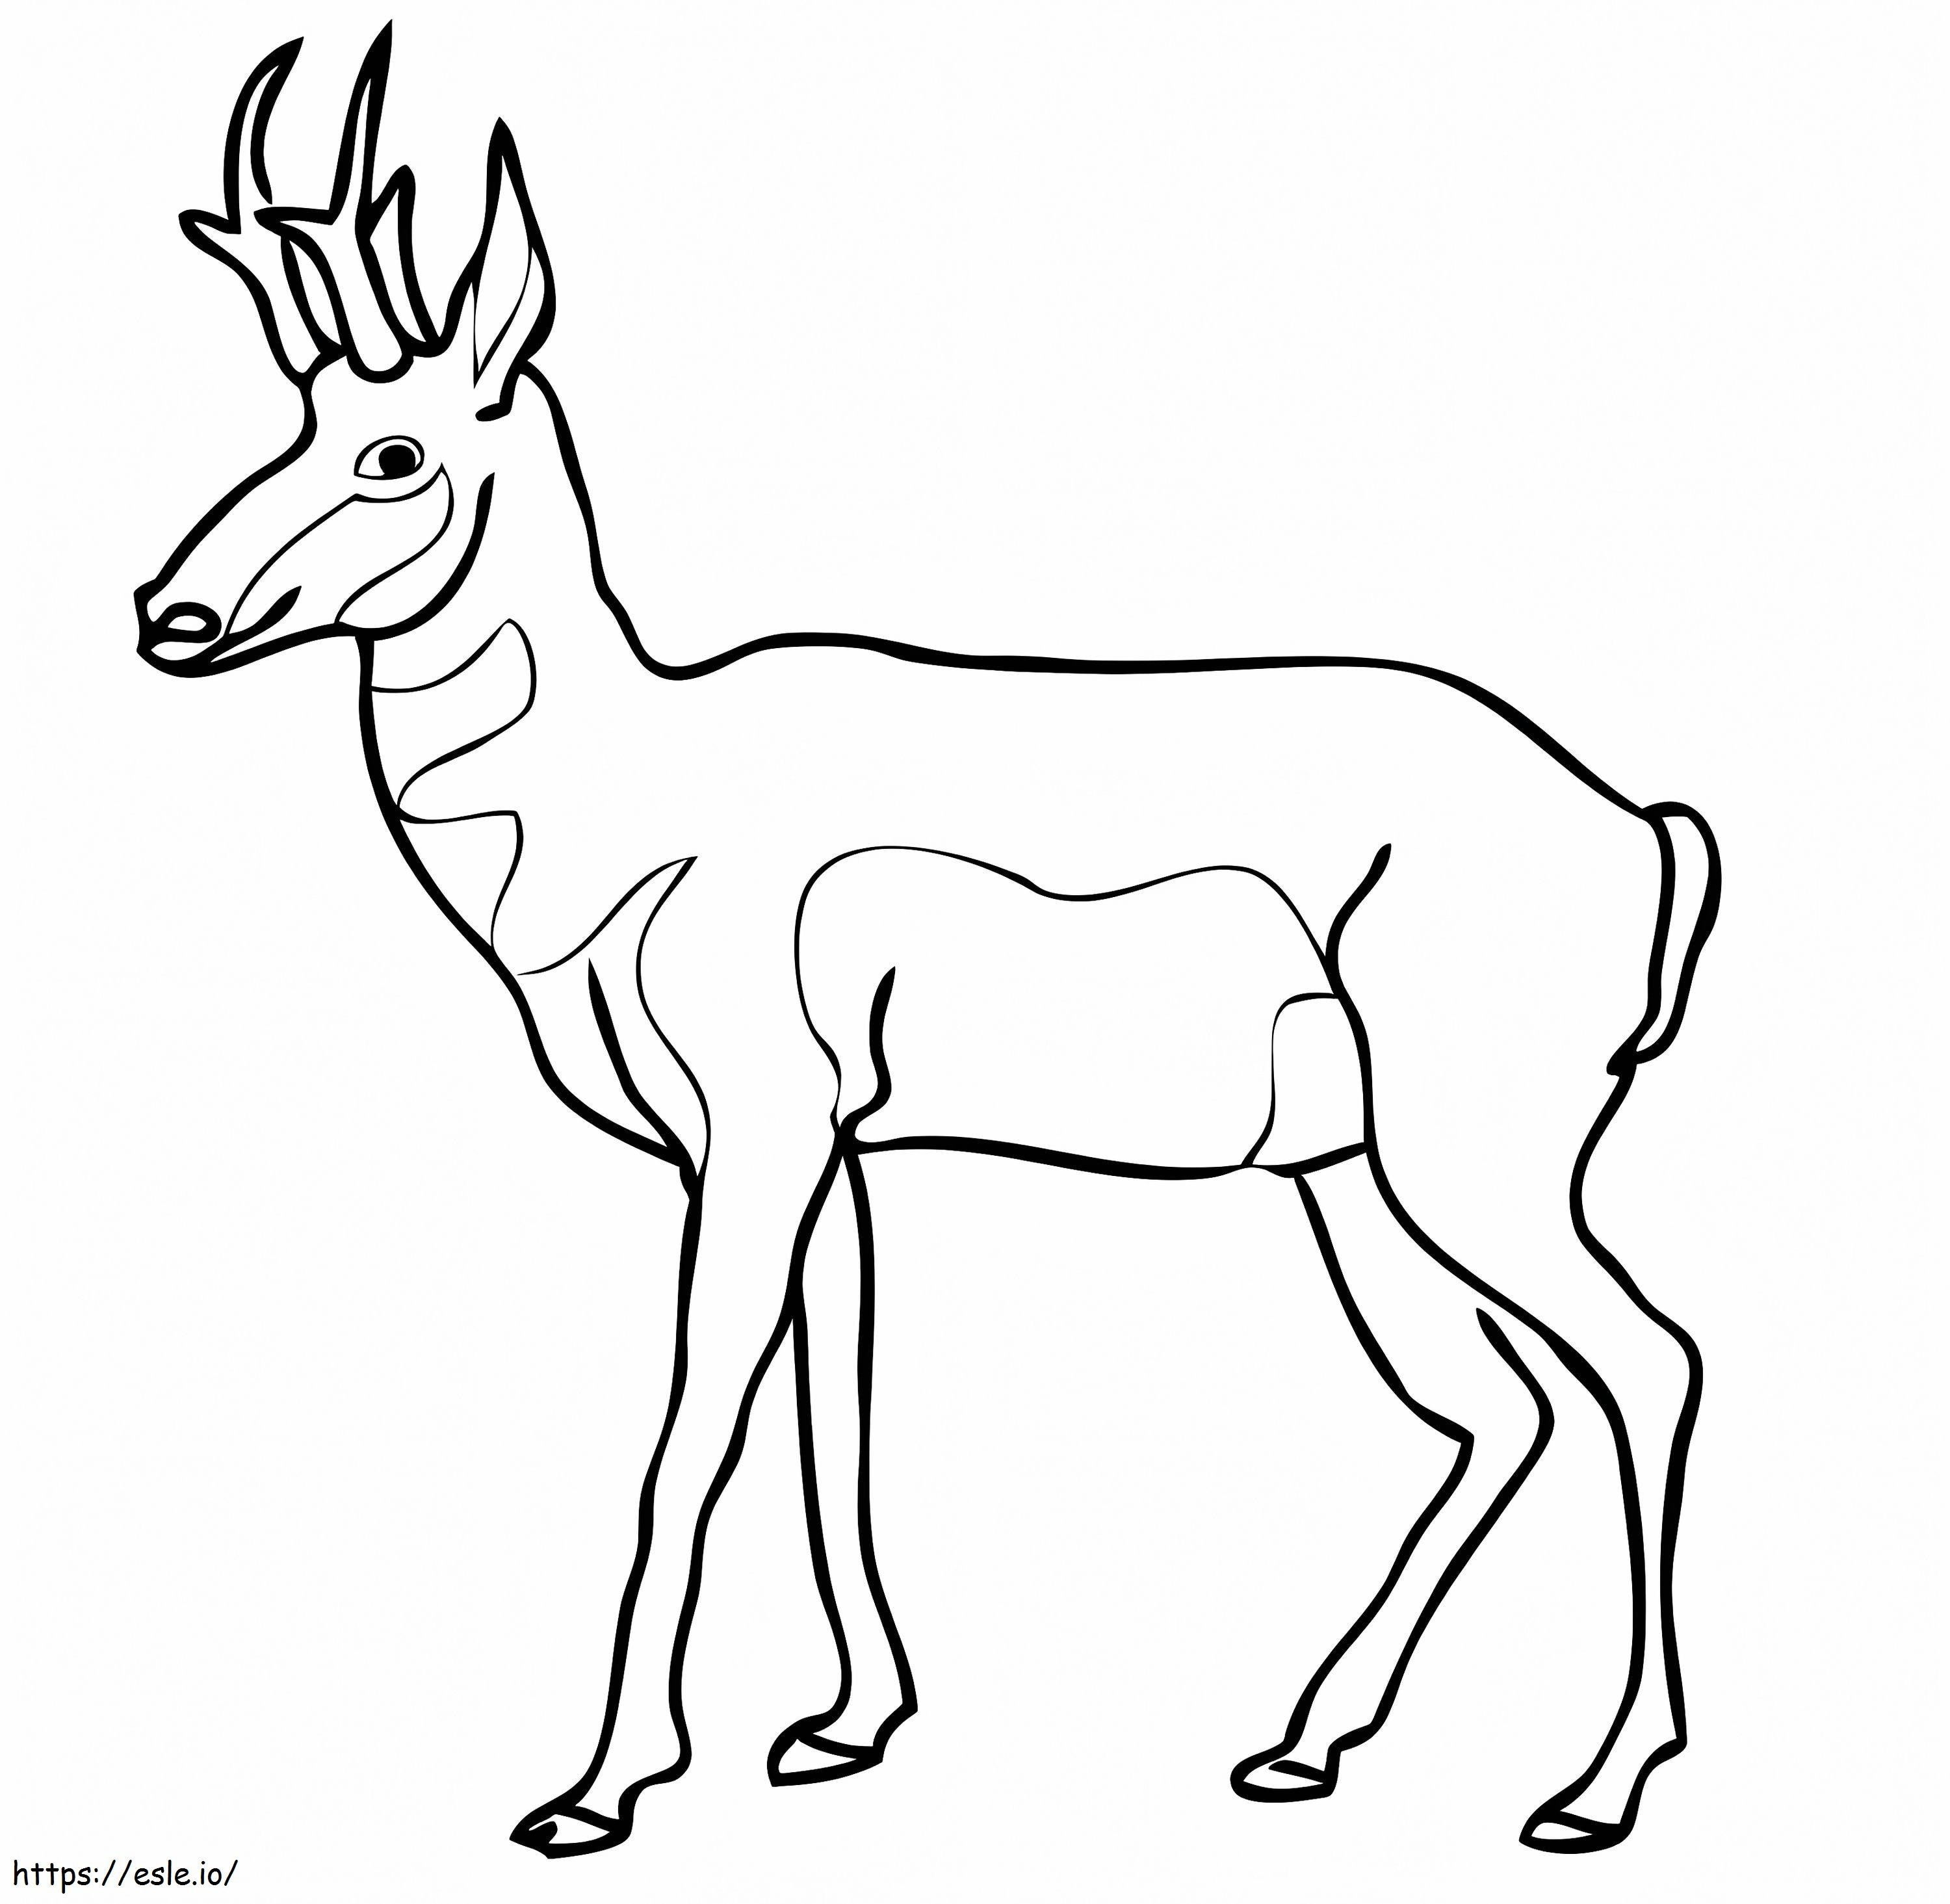 Nordamerikanische Pronghorn-Antilope ausmalbilder